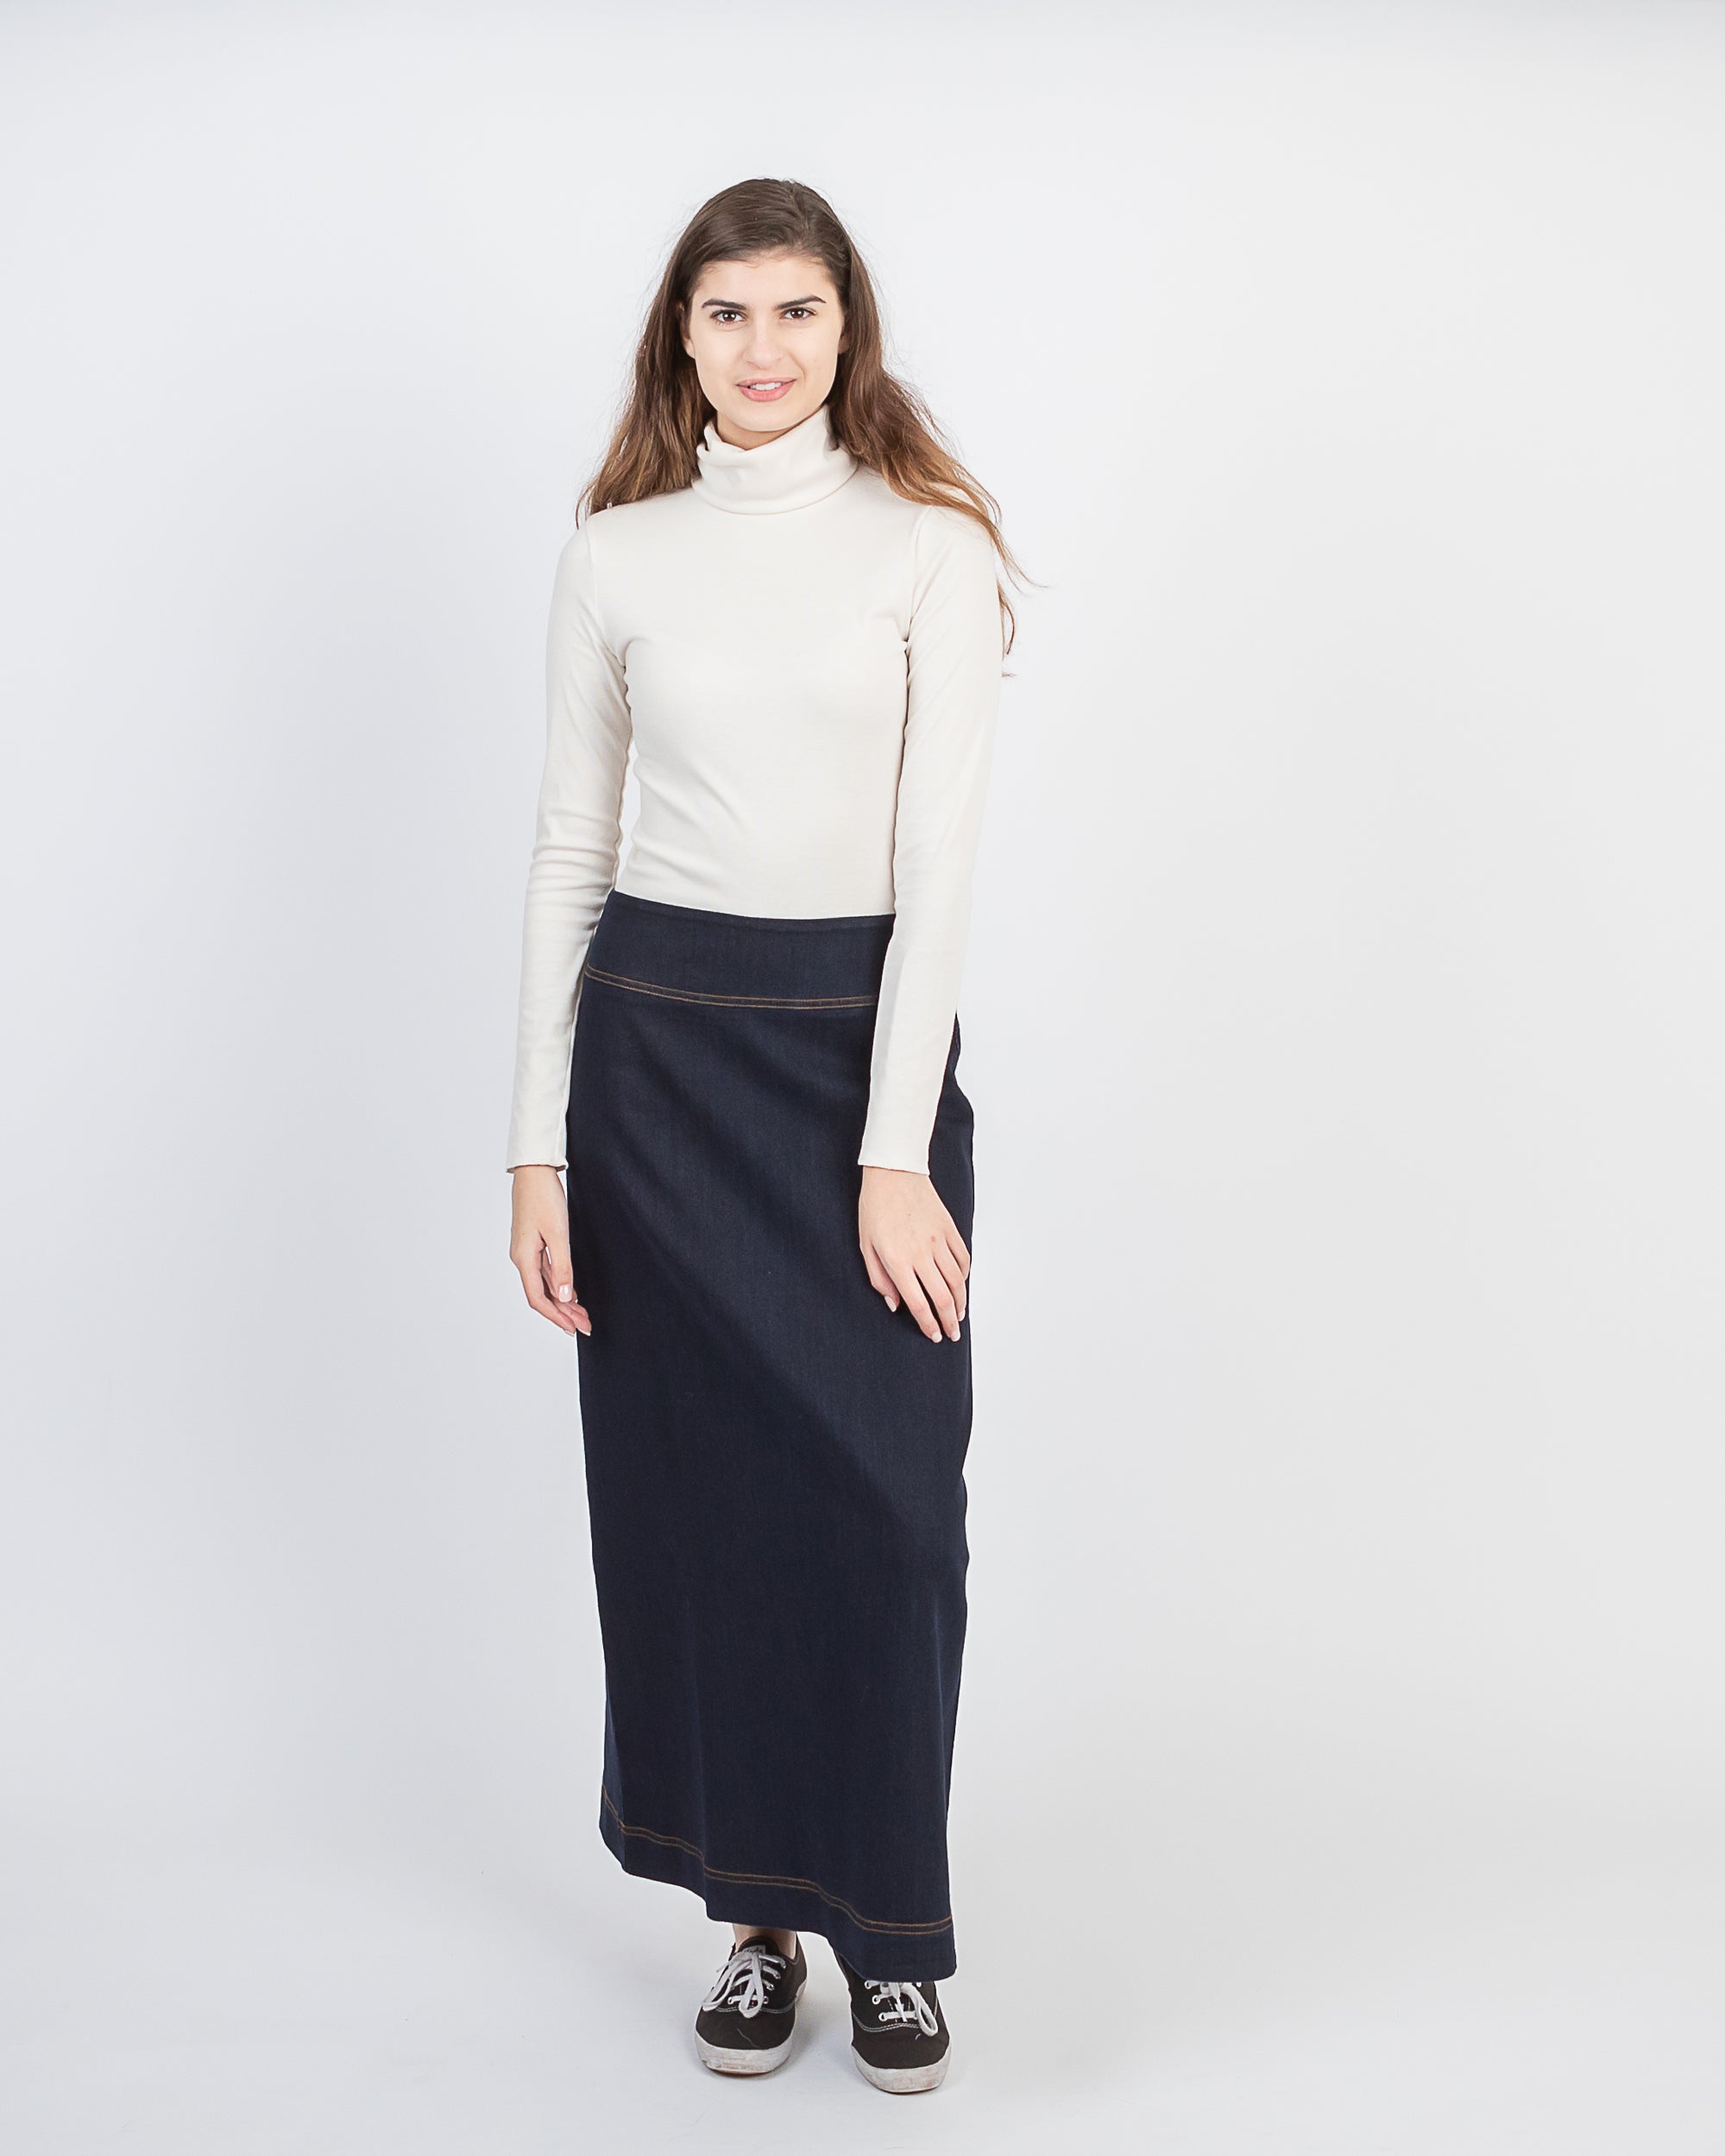 Classic Modest Long A-line Dark Blue Denim Skirt – newCreation Apparel